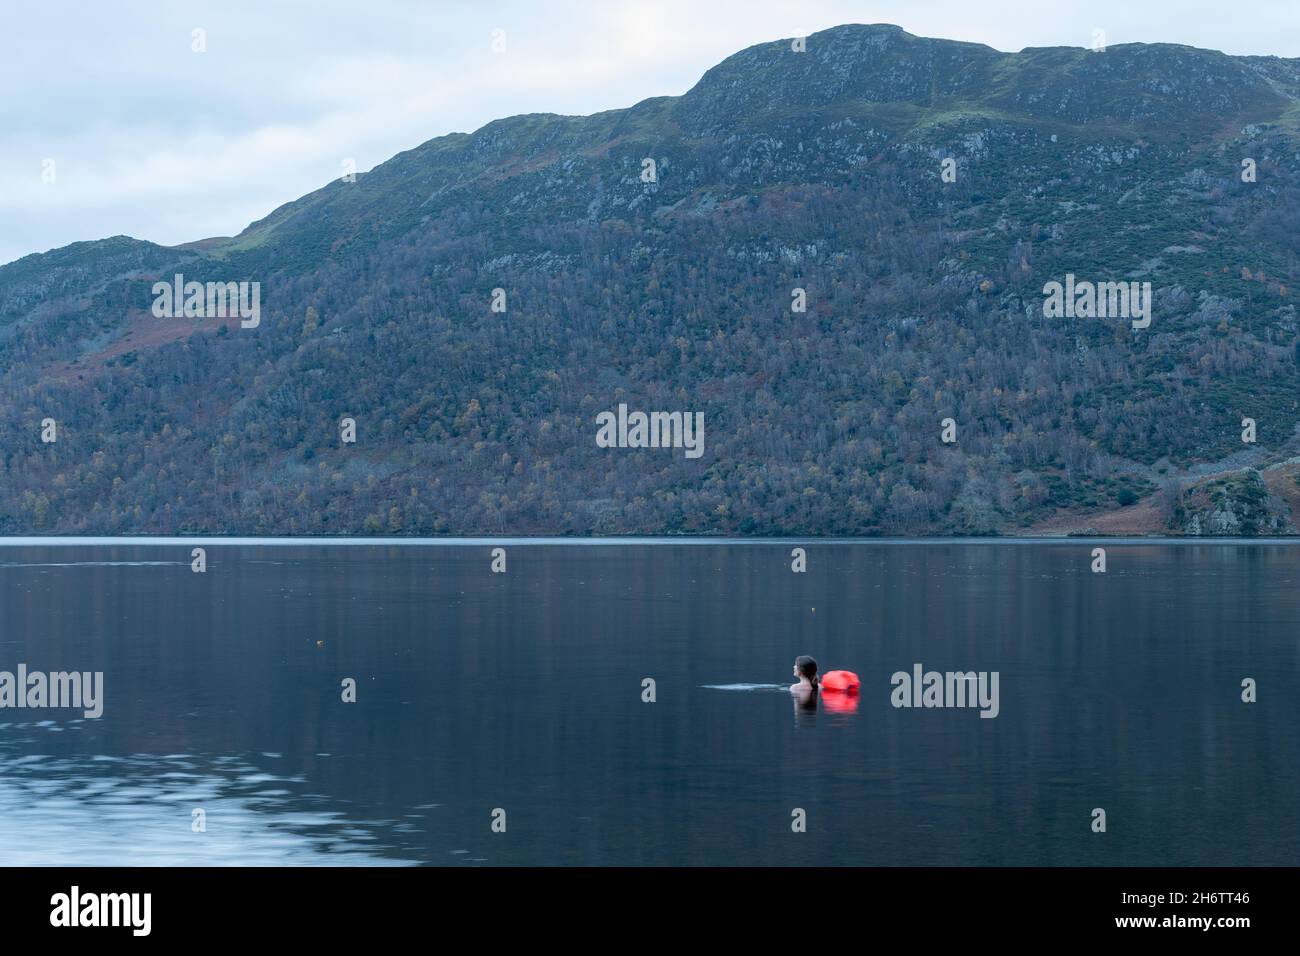 Nageur sauvage, femme nageant à Ullswater dans le Lake District tôt dans la matinée avec des montagnes en arrière-plan, Cumbria, Angleterre, Royaume-Uni Banque D'Images